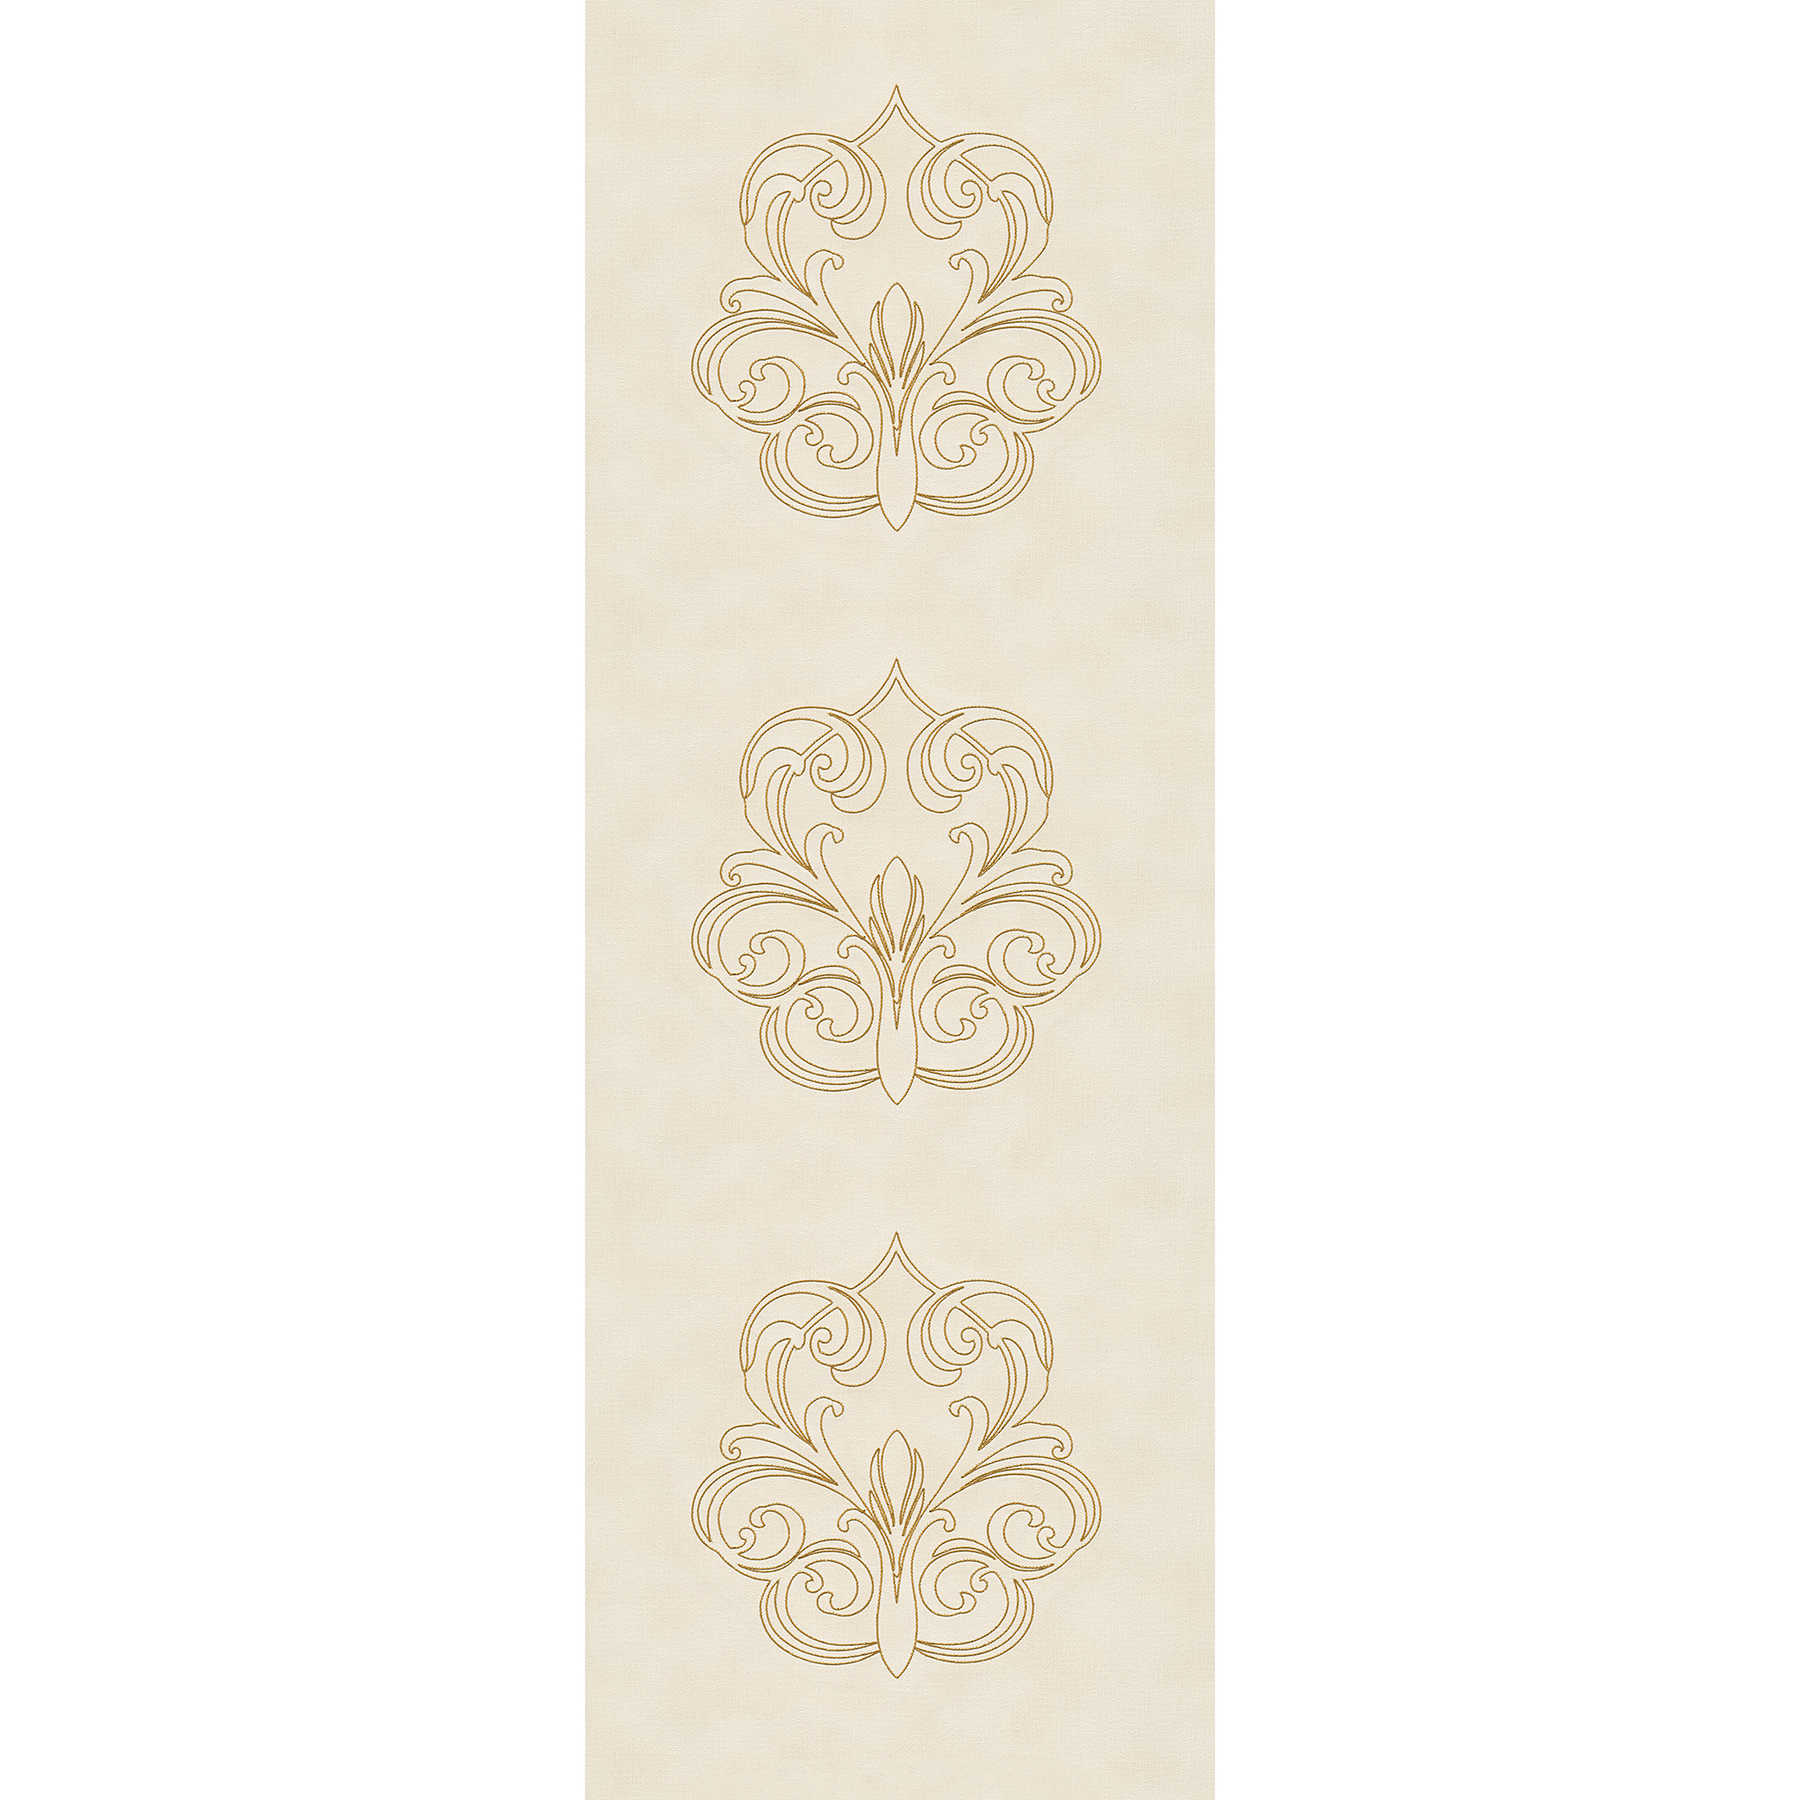         Premium Wandpanel mit Ornamenten auf Textilstruktur – Creme, Gold
    